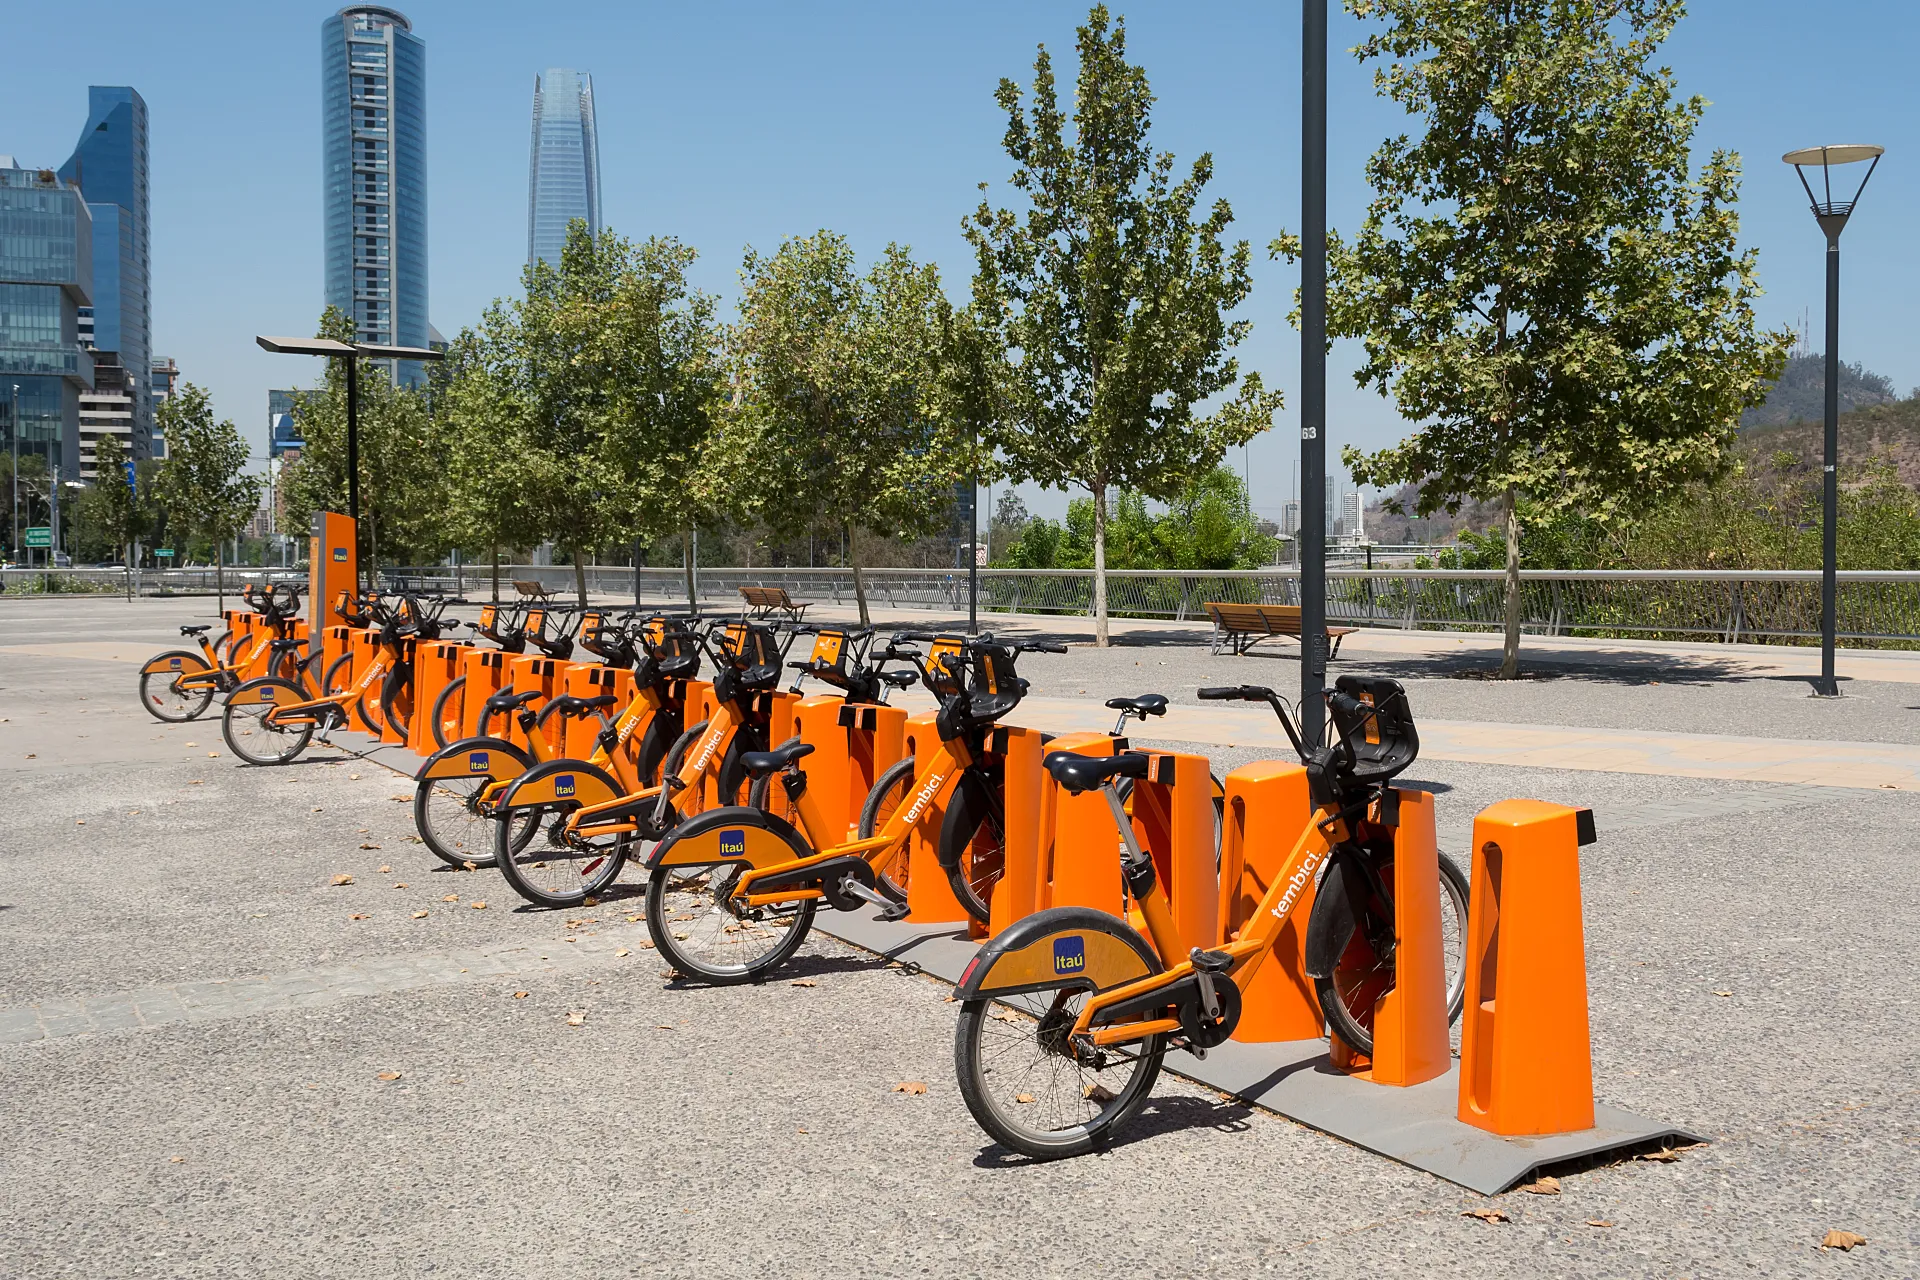 Instalación del sistema Bikesantiago en el Parque Bicentenario de Santiago de Chile (foto: Carlos Figueroa).